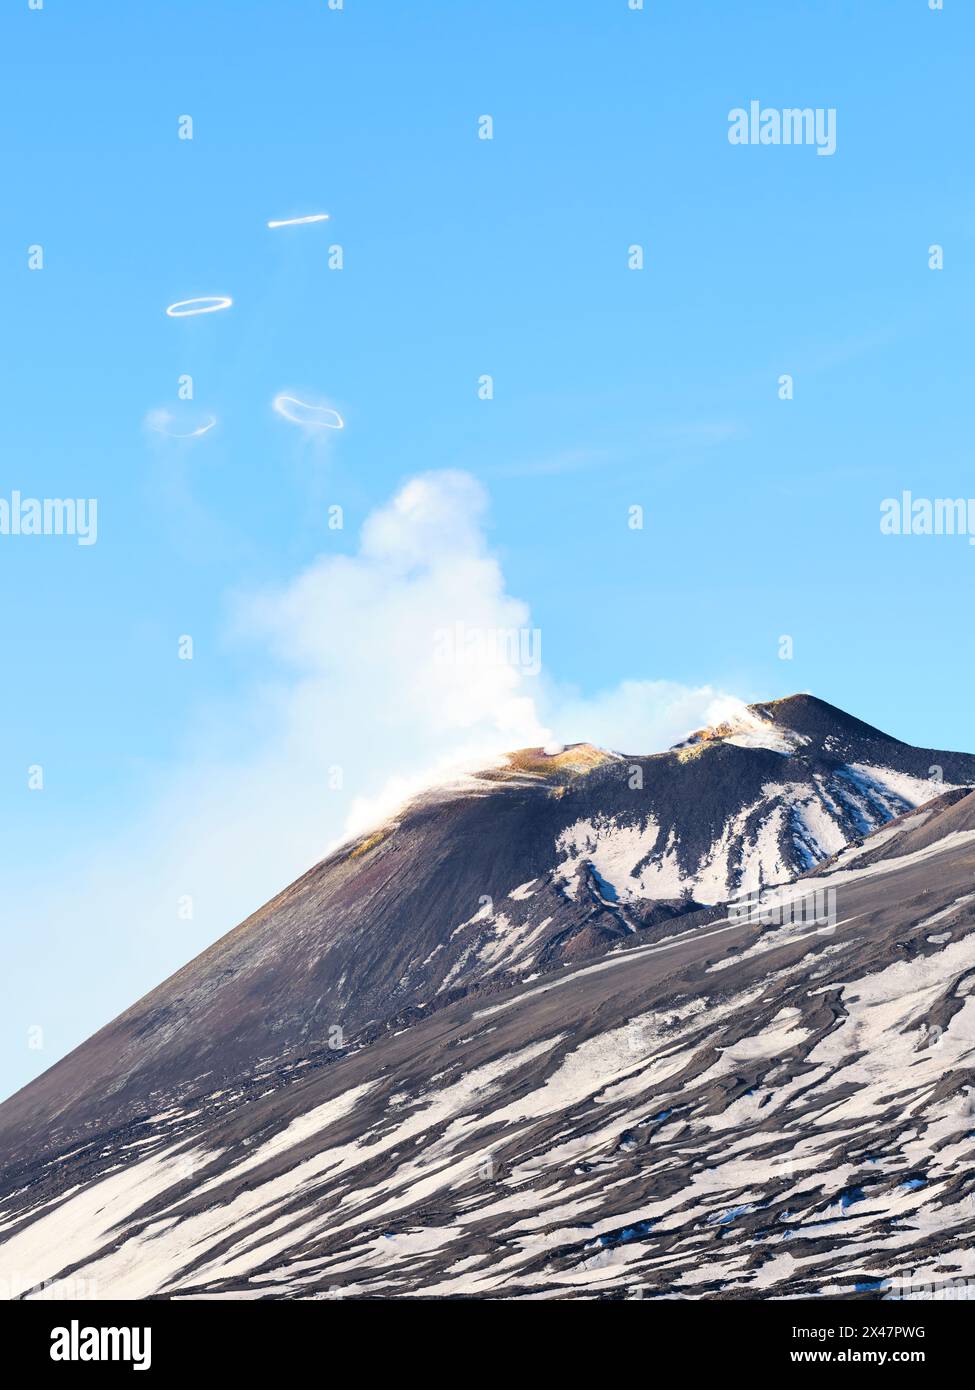 VUE AÉRIENNE. Sommet de l'Etna soufflant des anneaux de fumée volcanique (anneaux vortex). c'est un événement rare. Ville métropolitaine de Catane, Sicile, Italie. Banque D'Images